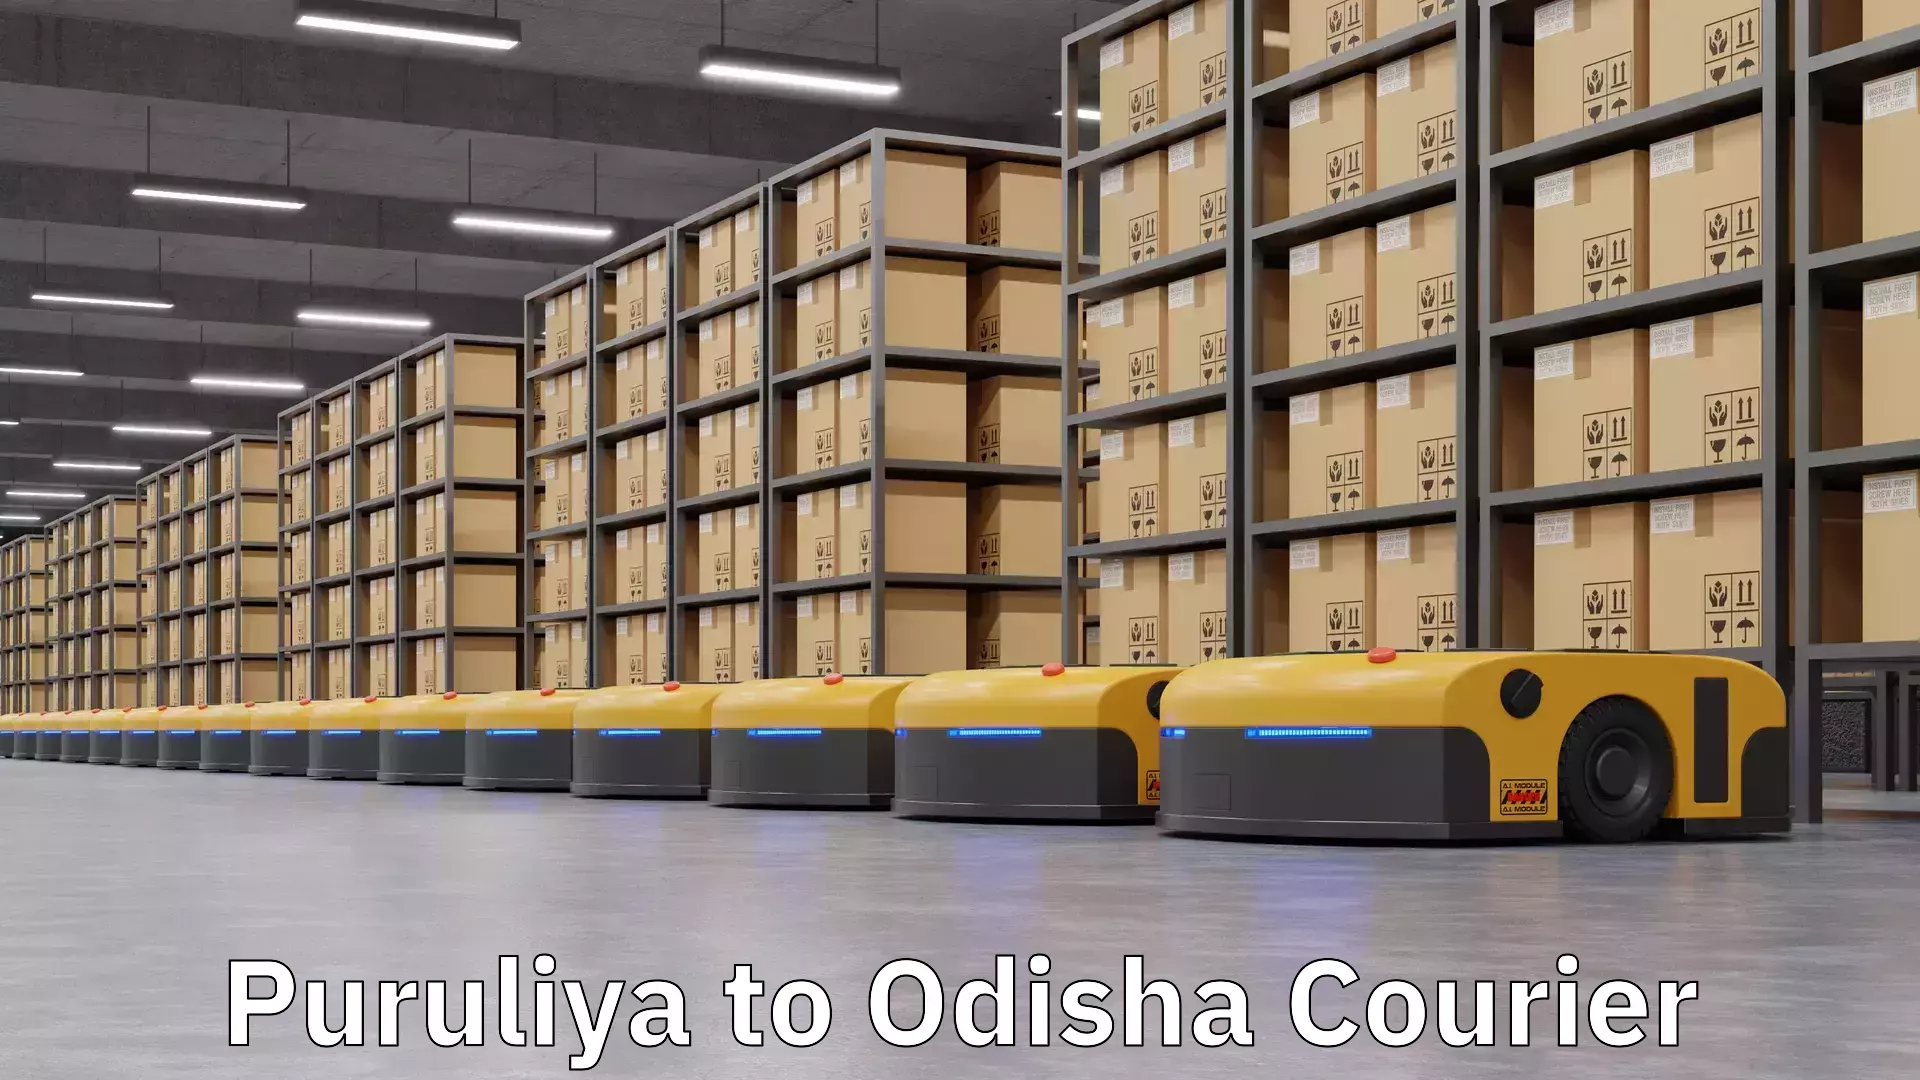 Local delivery service Puruliya to Odisha